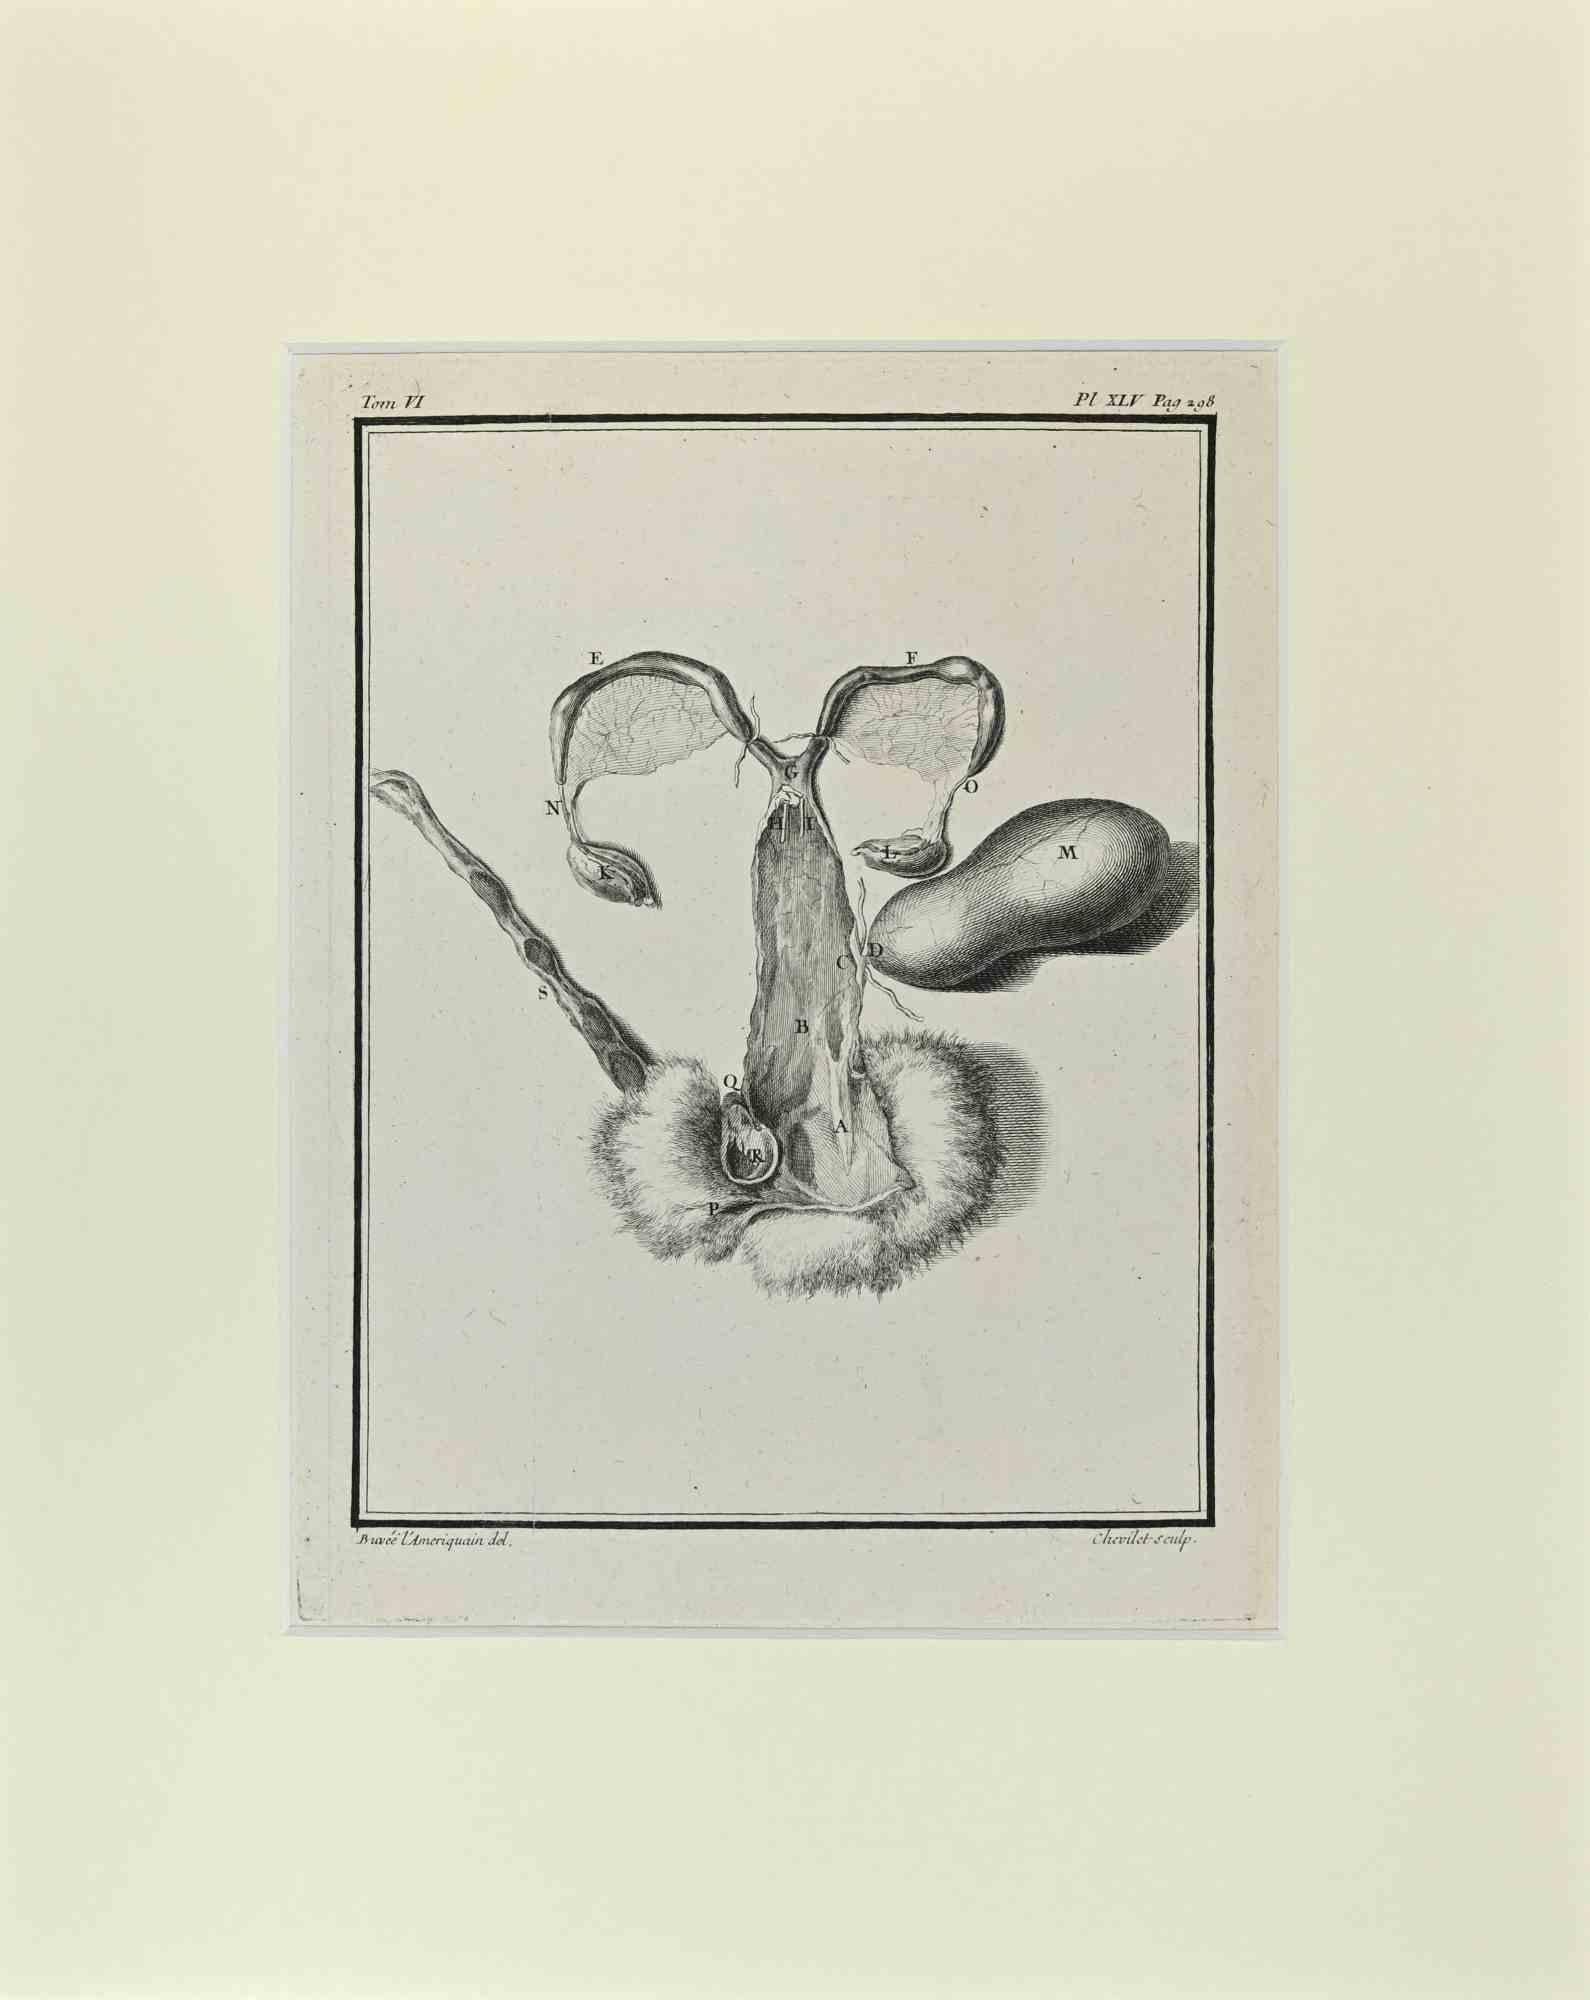 L'anatomie vétérinaire est une œuvre d'art réalisée par Buvée l'Américain en 1771.  

Gravure à l'eau-forte B./W. sur papier ivoire. Signé sur la plaque dans la marge inférieure gauche.

L'œuvre est collée sur du carton. Dimensions totales : 35x28